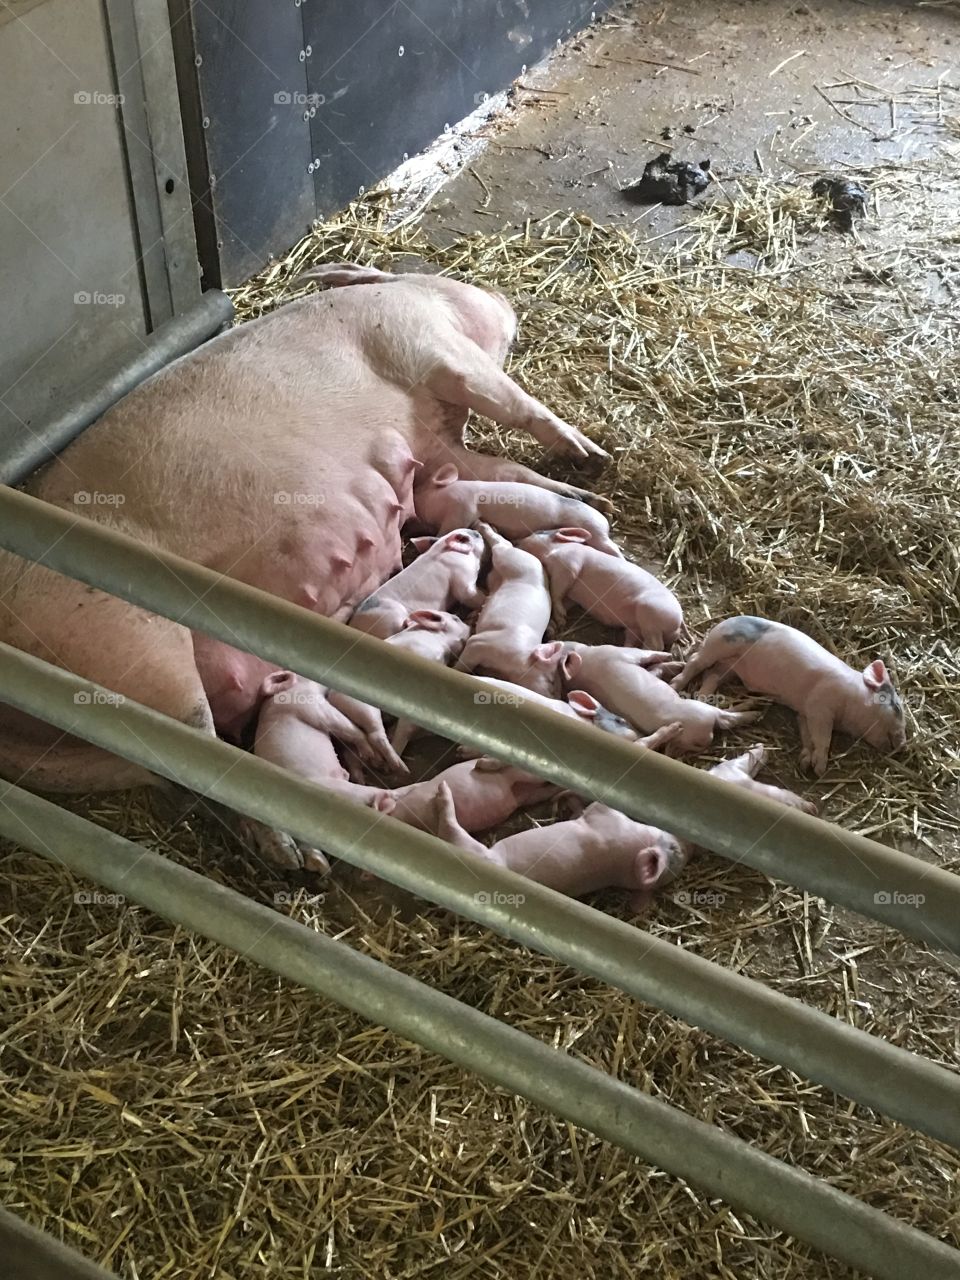 new born piglets